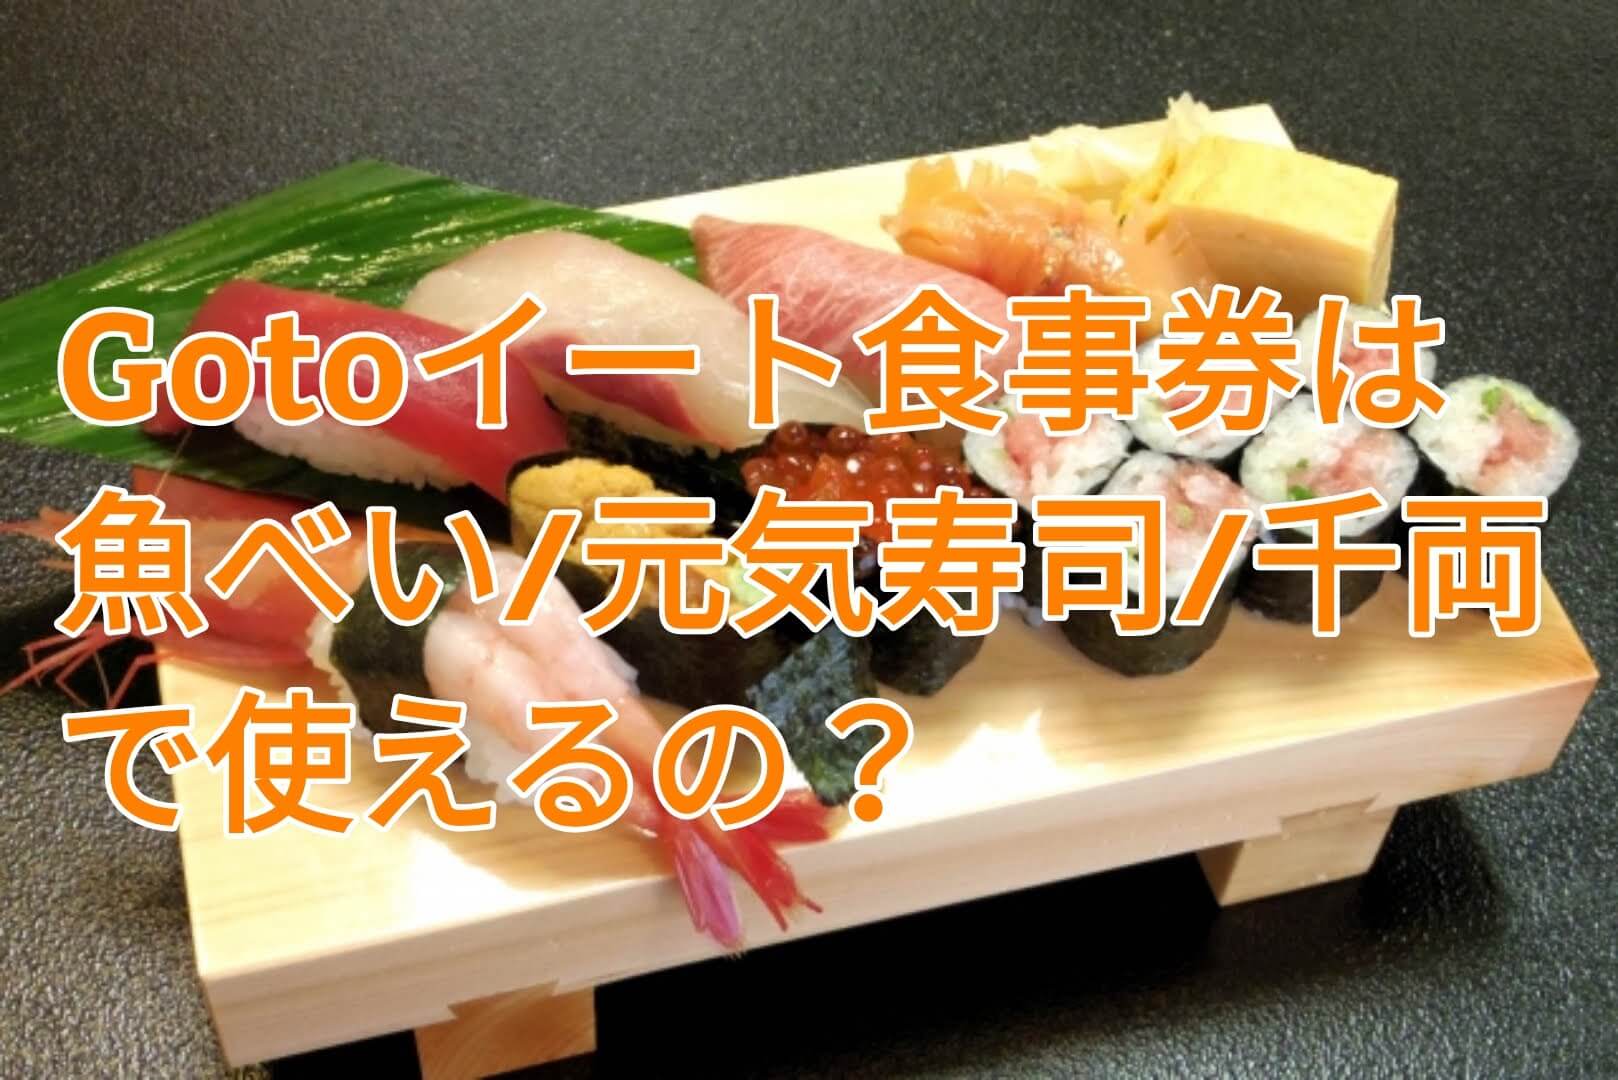 Gotoイートの食事券は魚べい 元気寿司 千両でも使える 利用できる店舗を調査 パパママハック